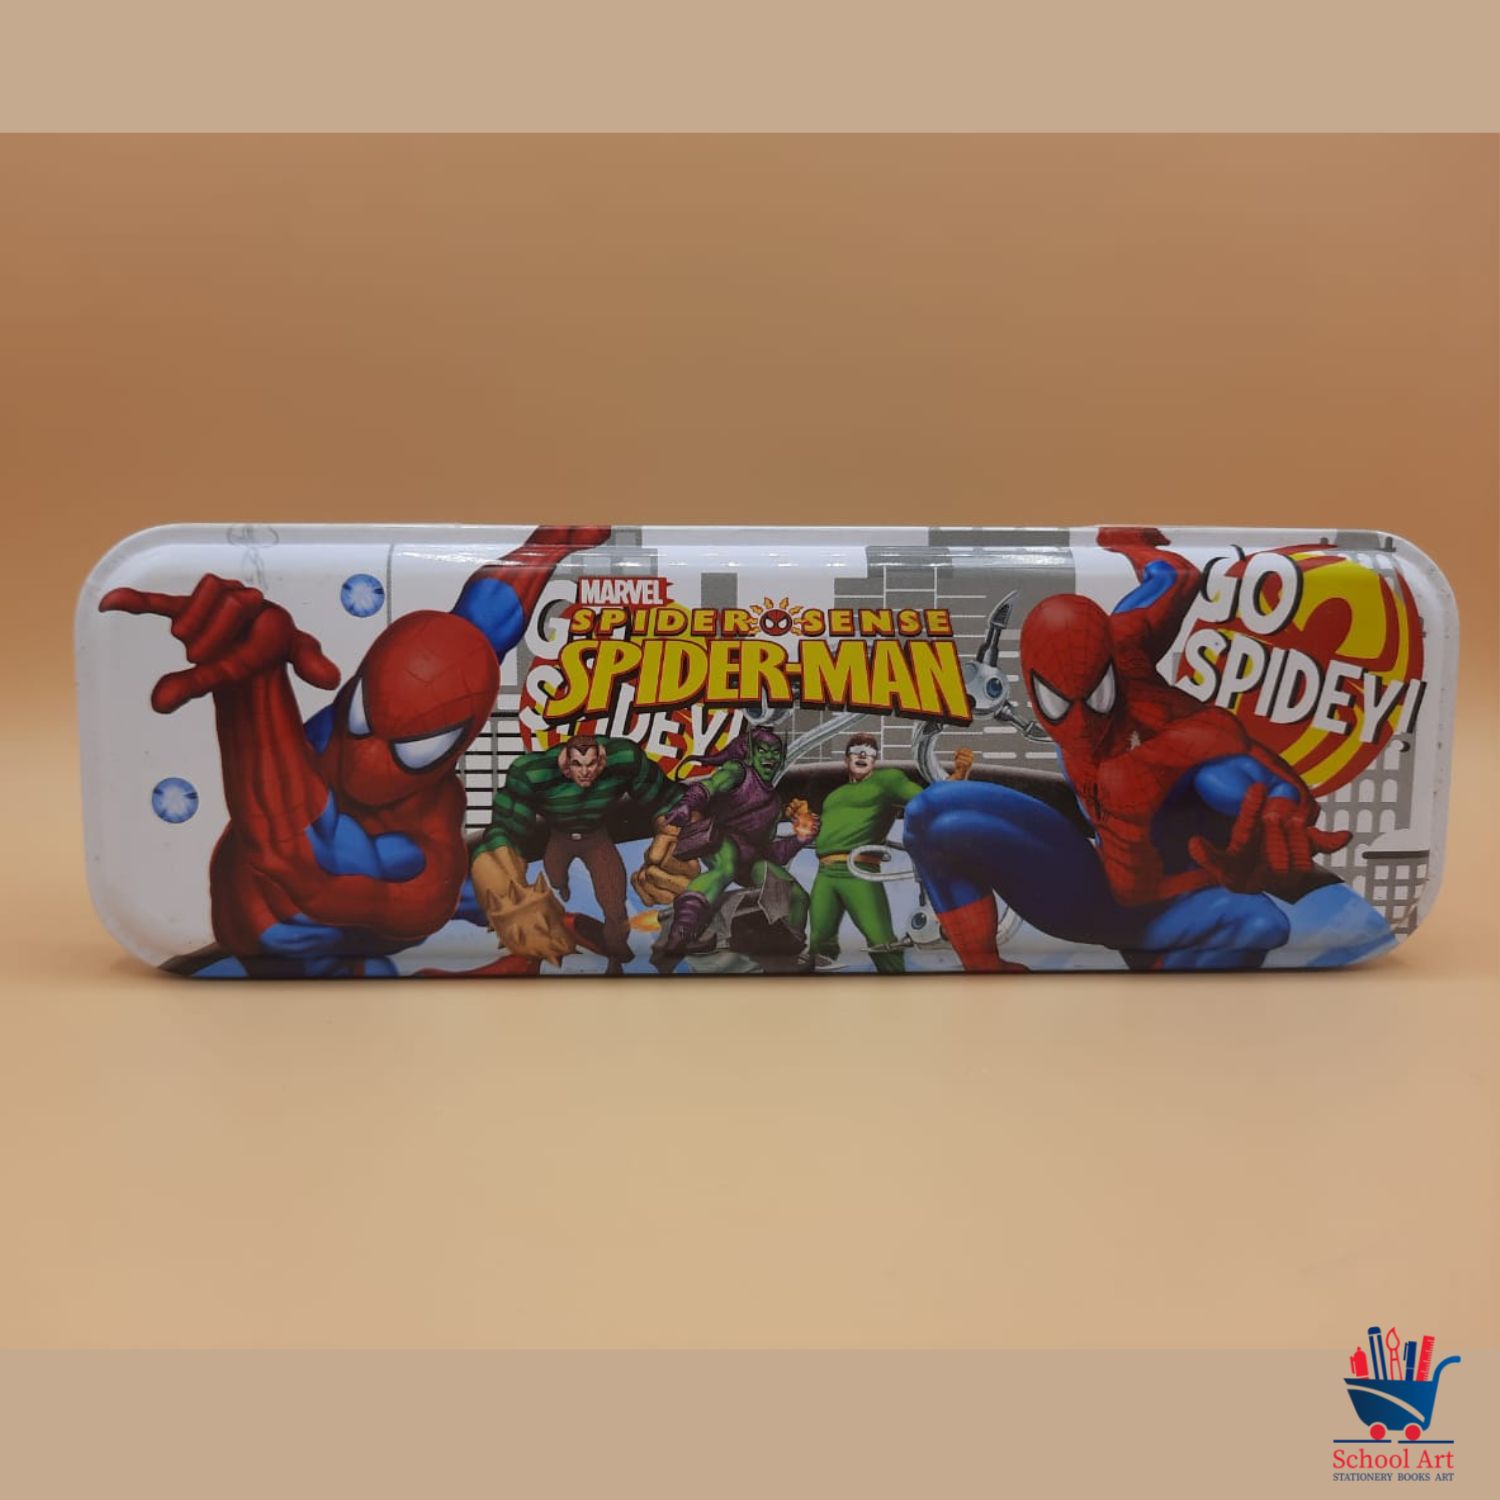 Spiderman pencil box